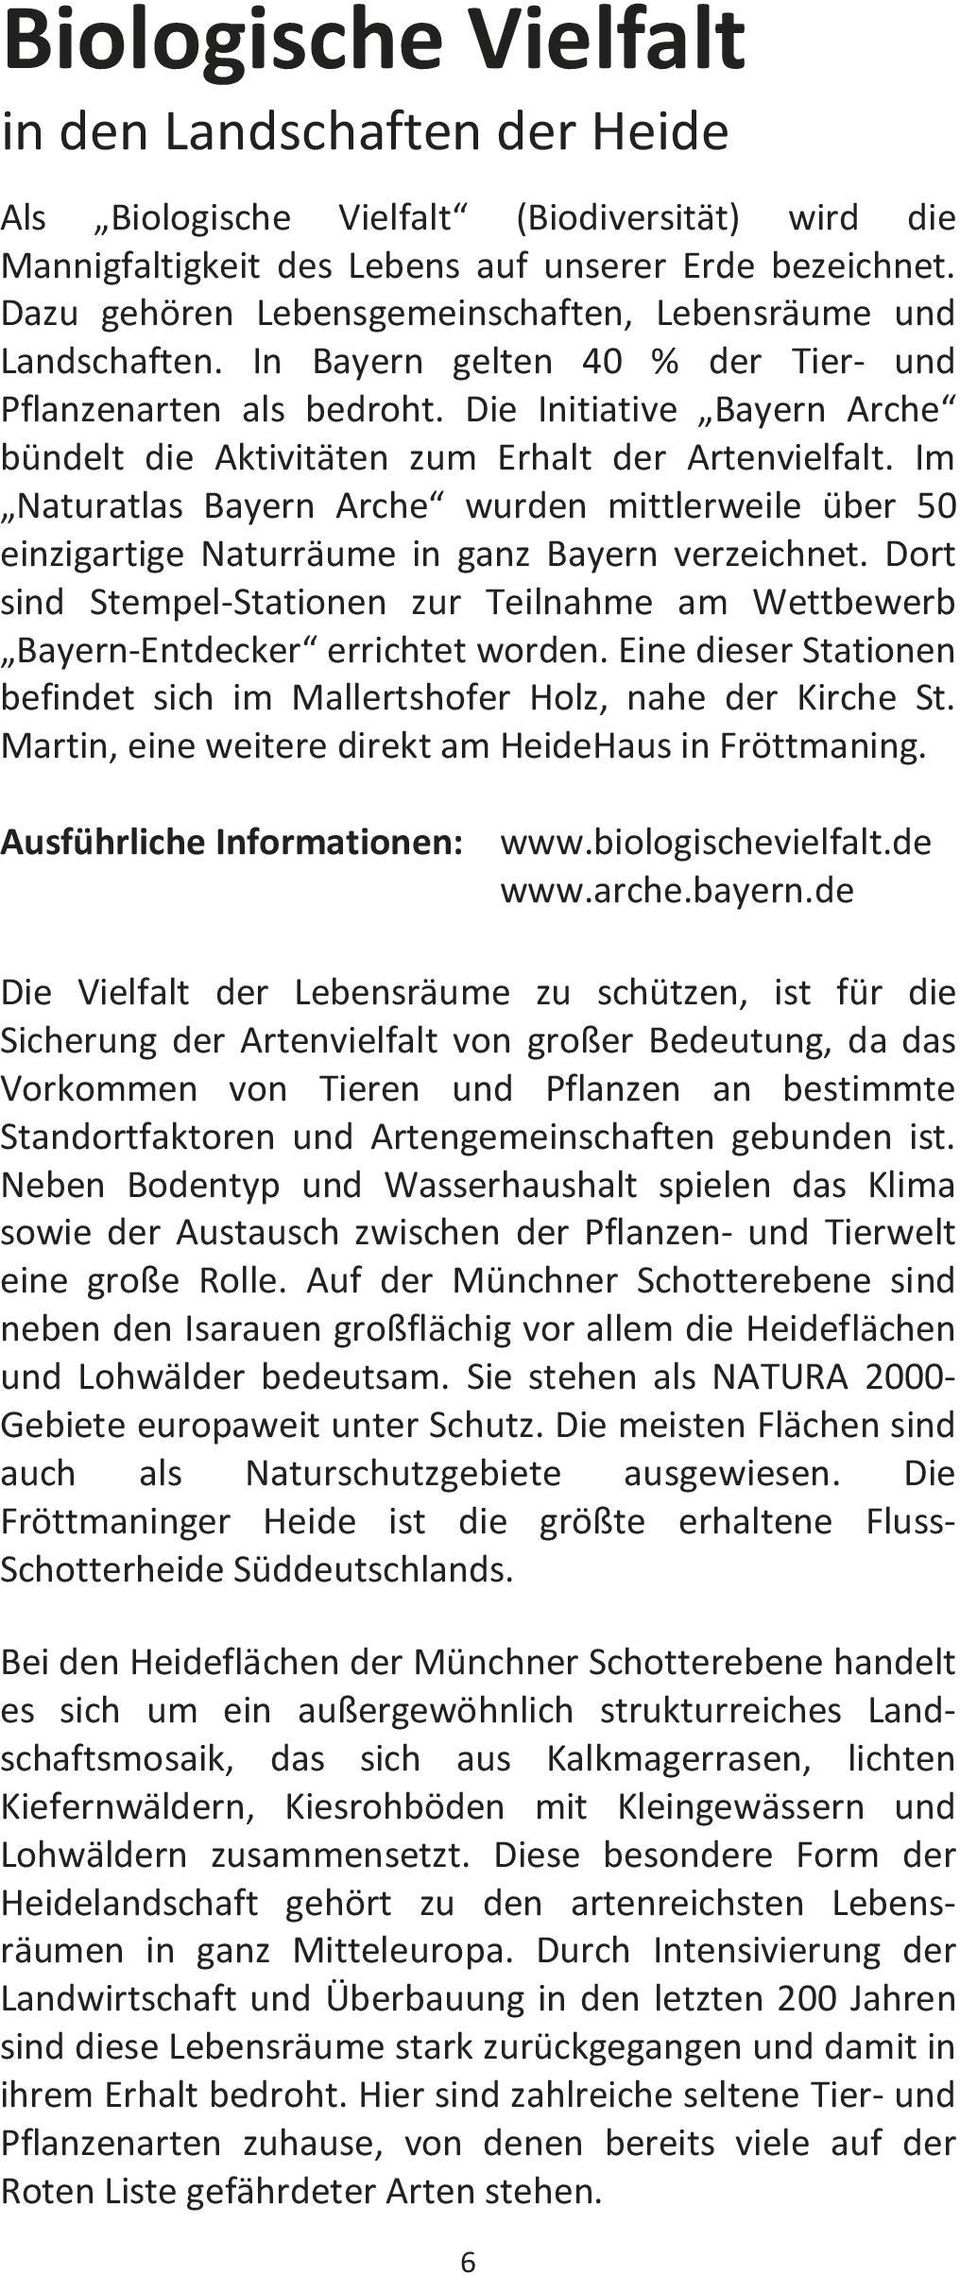 Die Initiative Bayern Arche bündelt die Aktivitäten zum Erhalt der Artenvielfalt. Im Naturatlas Bayern Arche wurden mittlerweile über 50 einzigartige Naturräume in ganz Bayern verzeichnet.